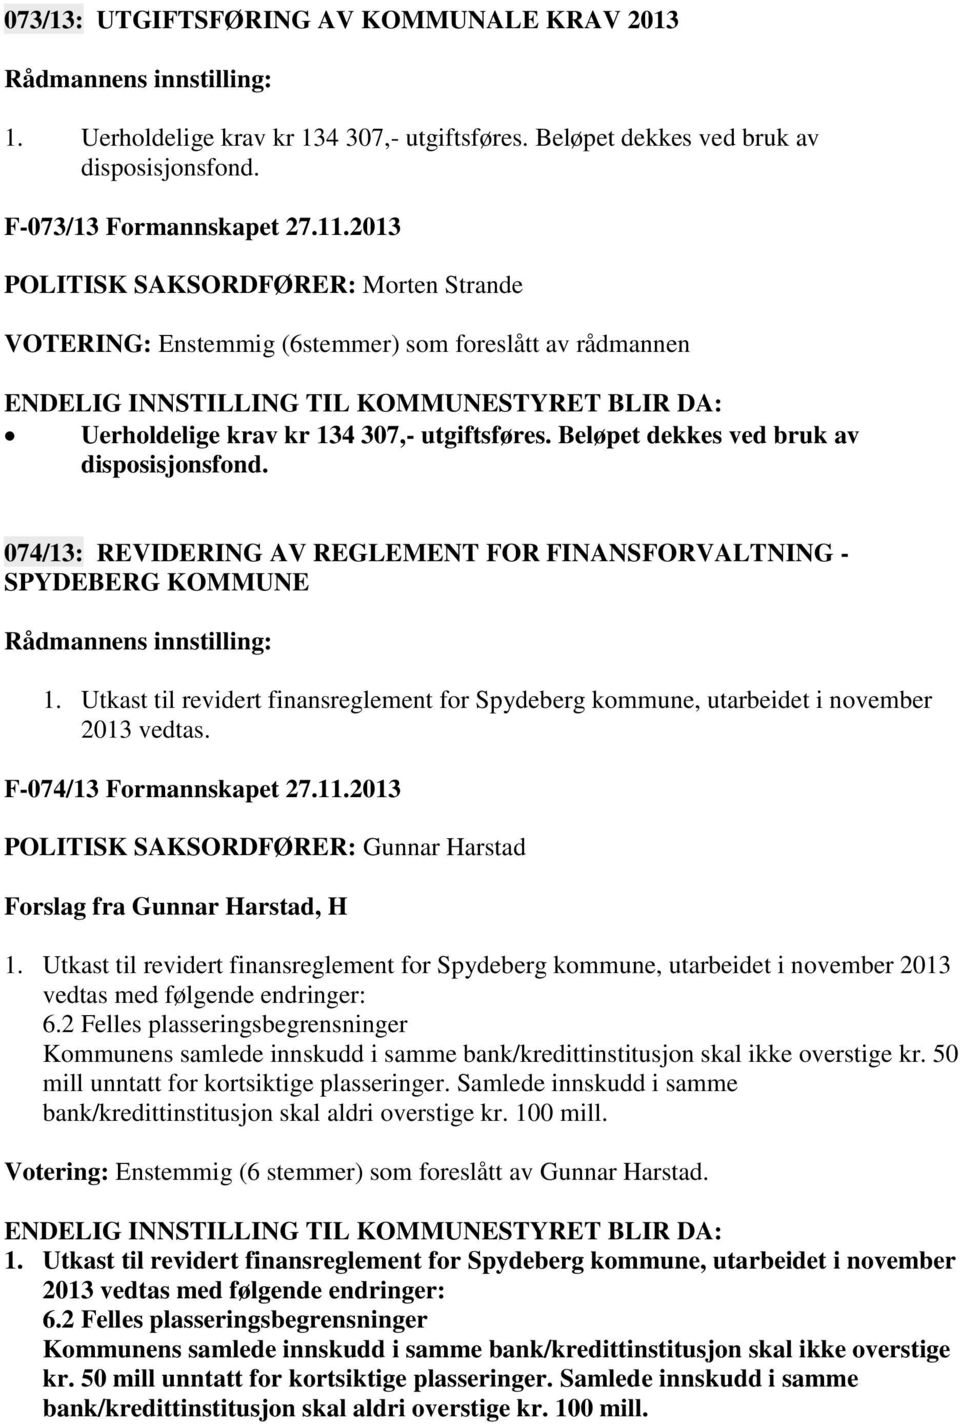 074/13: REVIDERING AV REGLEMENT FOR FINANSFORVALTNING - SPYDEBERG KOMMUNE 1. Utkast til revidert finansreglement for Spydeberg kommune, utarbeidet i november 2013 vedtas. F-074/13 Formannskapet 27.11.